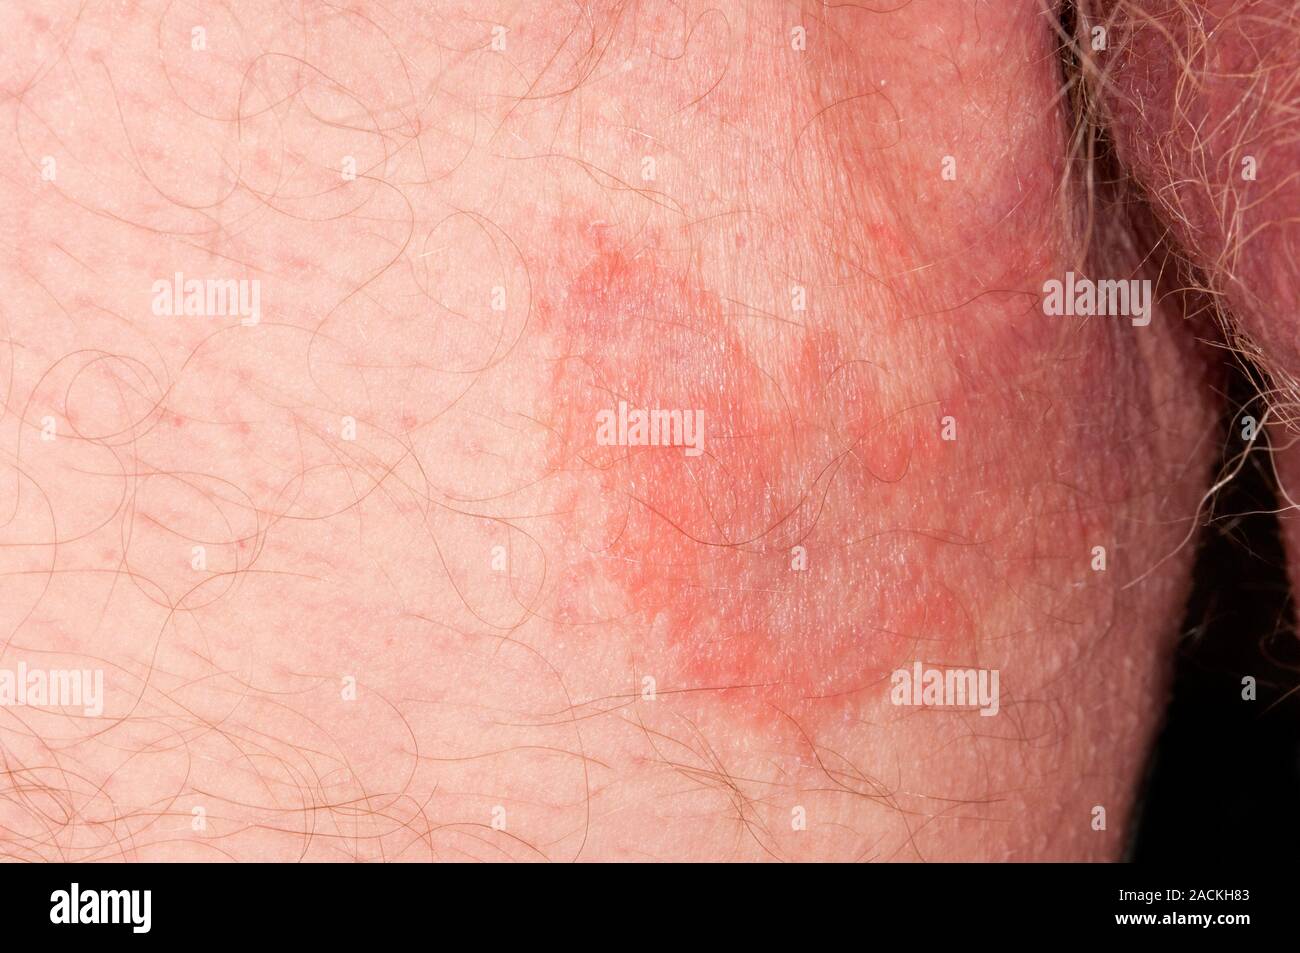 Tigna infezioni fungine sulla pelle dell'inguine (zona inguinale) in 79  anni di paziente di sesso maschile. Noto come tinea cruris o Jock prurito,  può essere causa di Foto stock - Alamy